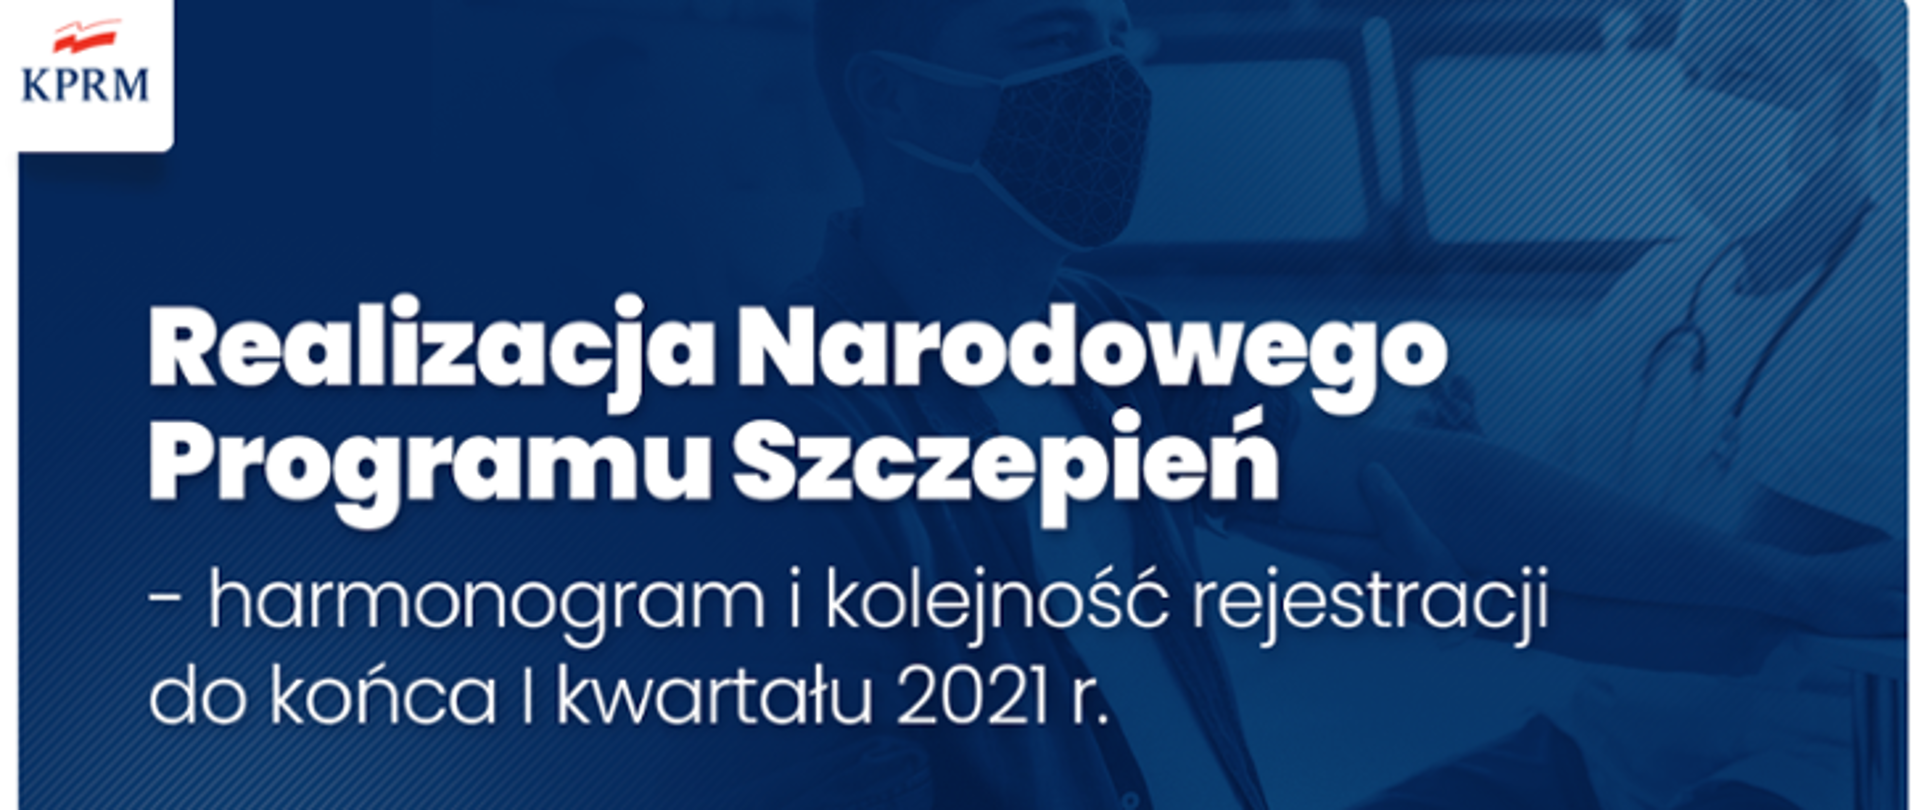 Obrazek z napisem "Realizacja Narodowego Programu Szczepień - harmonogram i kolejność rejestracji do końca I kwartału 2021 r.